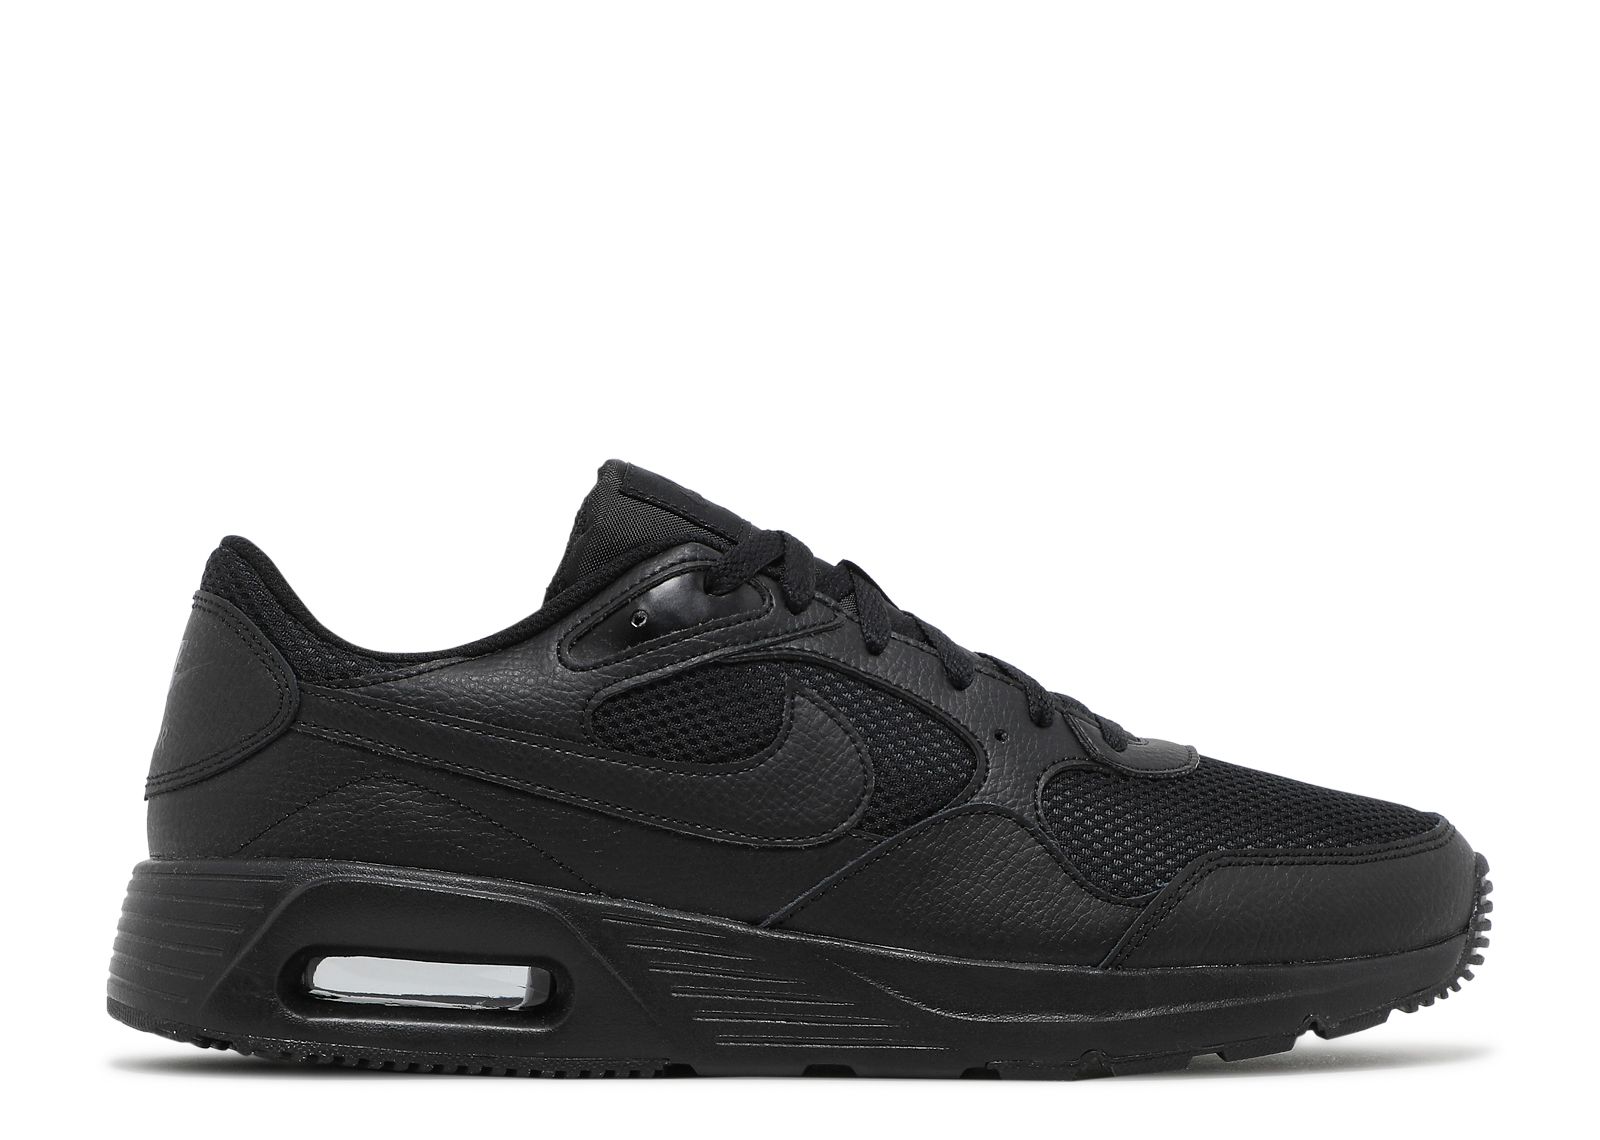 Air Max SC 'Triple Black' - Nike - CW4555 003 - black/black/black ...